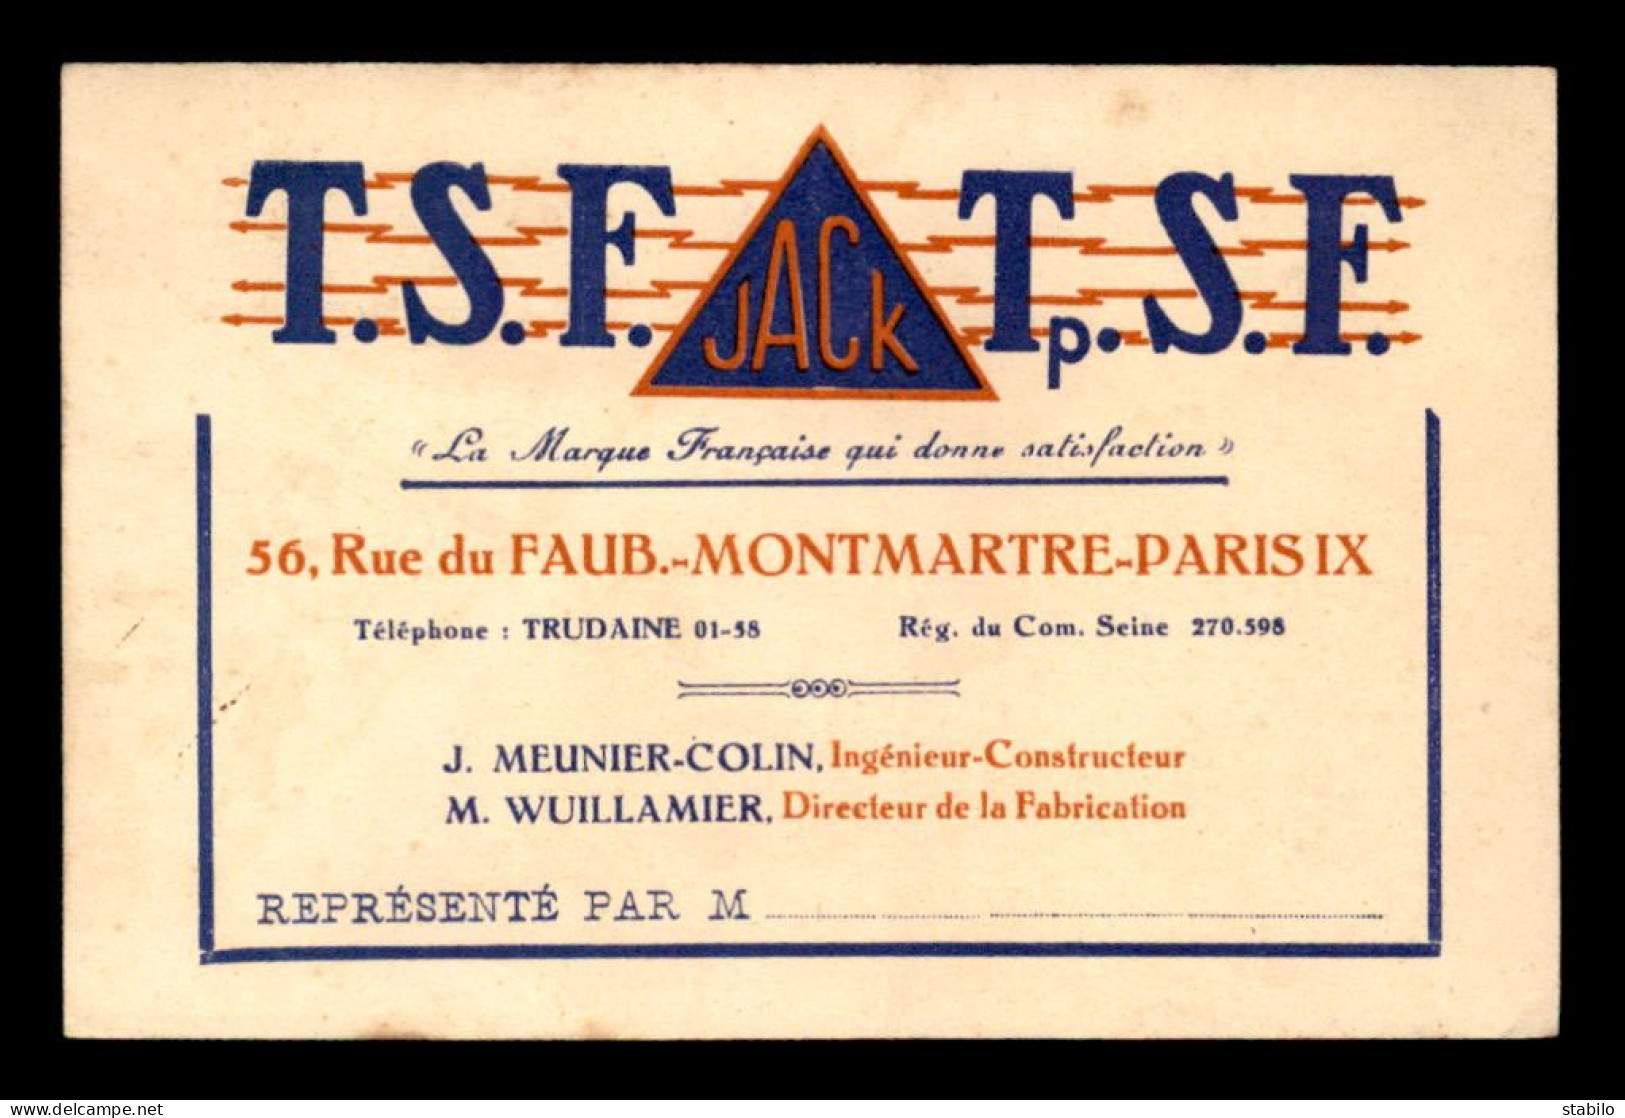 CARTE DE VISITE - T.S.F. JACK, 56 RUE DU FG MONTMARTRE PARIS 9EME - FORMAT 12 X 7.8 CM - Tarjetas De Visita